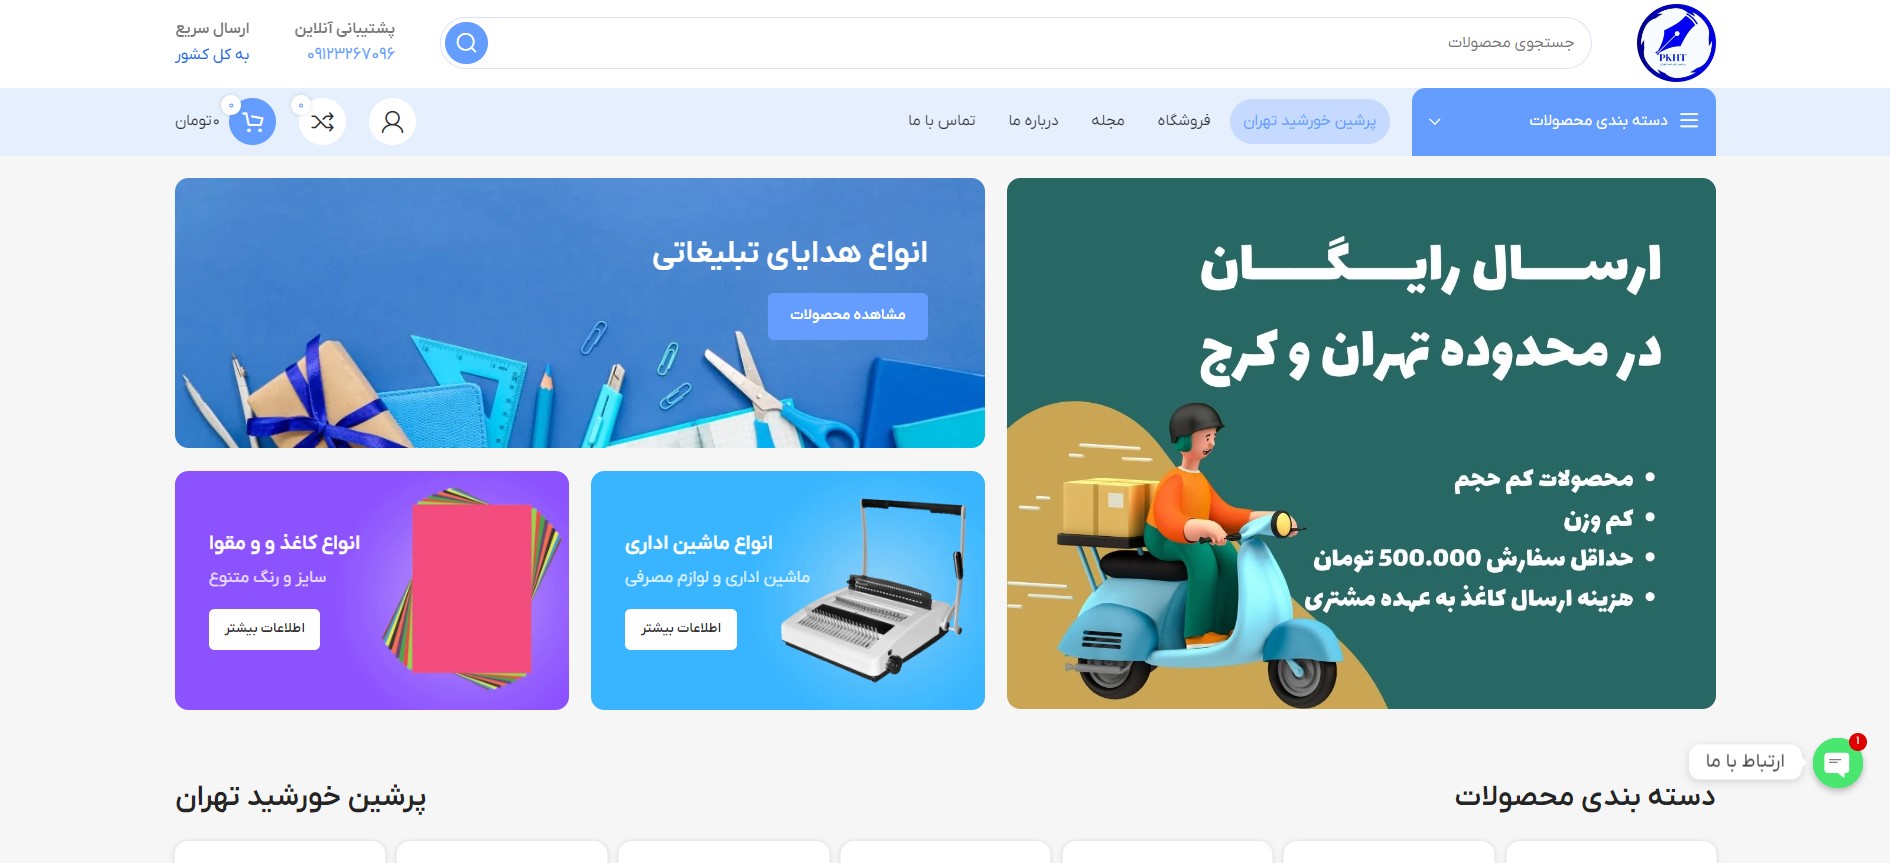 طراحی وب سایت فروشگاهی پرشین خورشید تهران